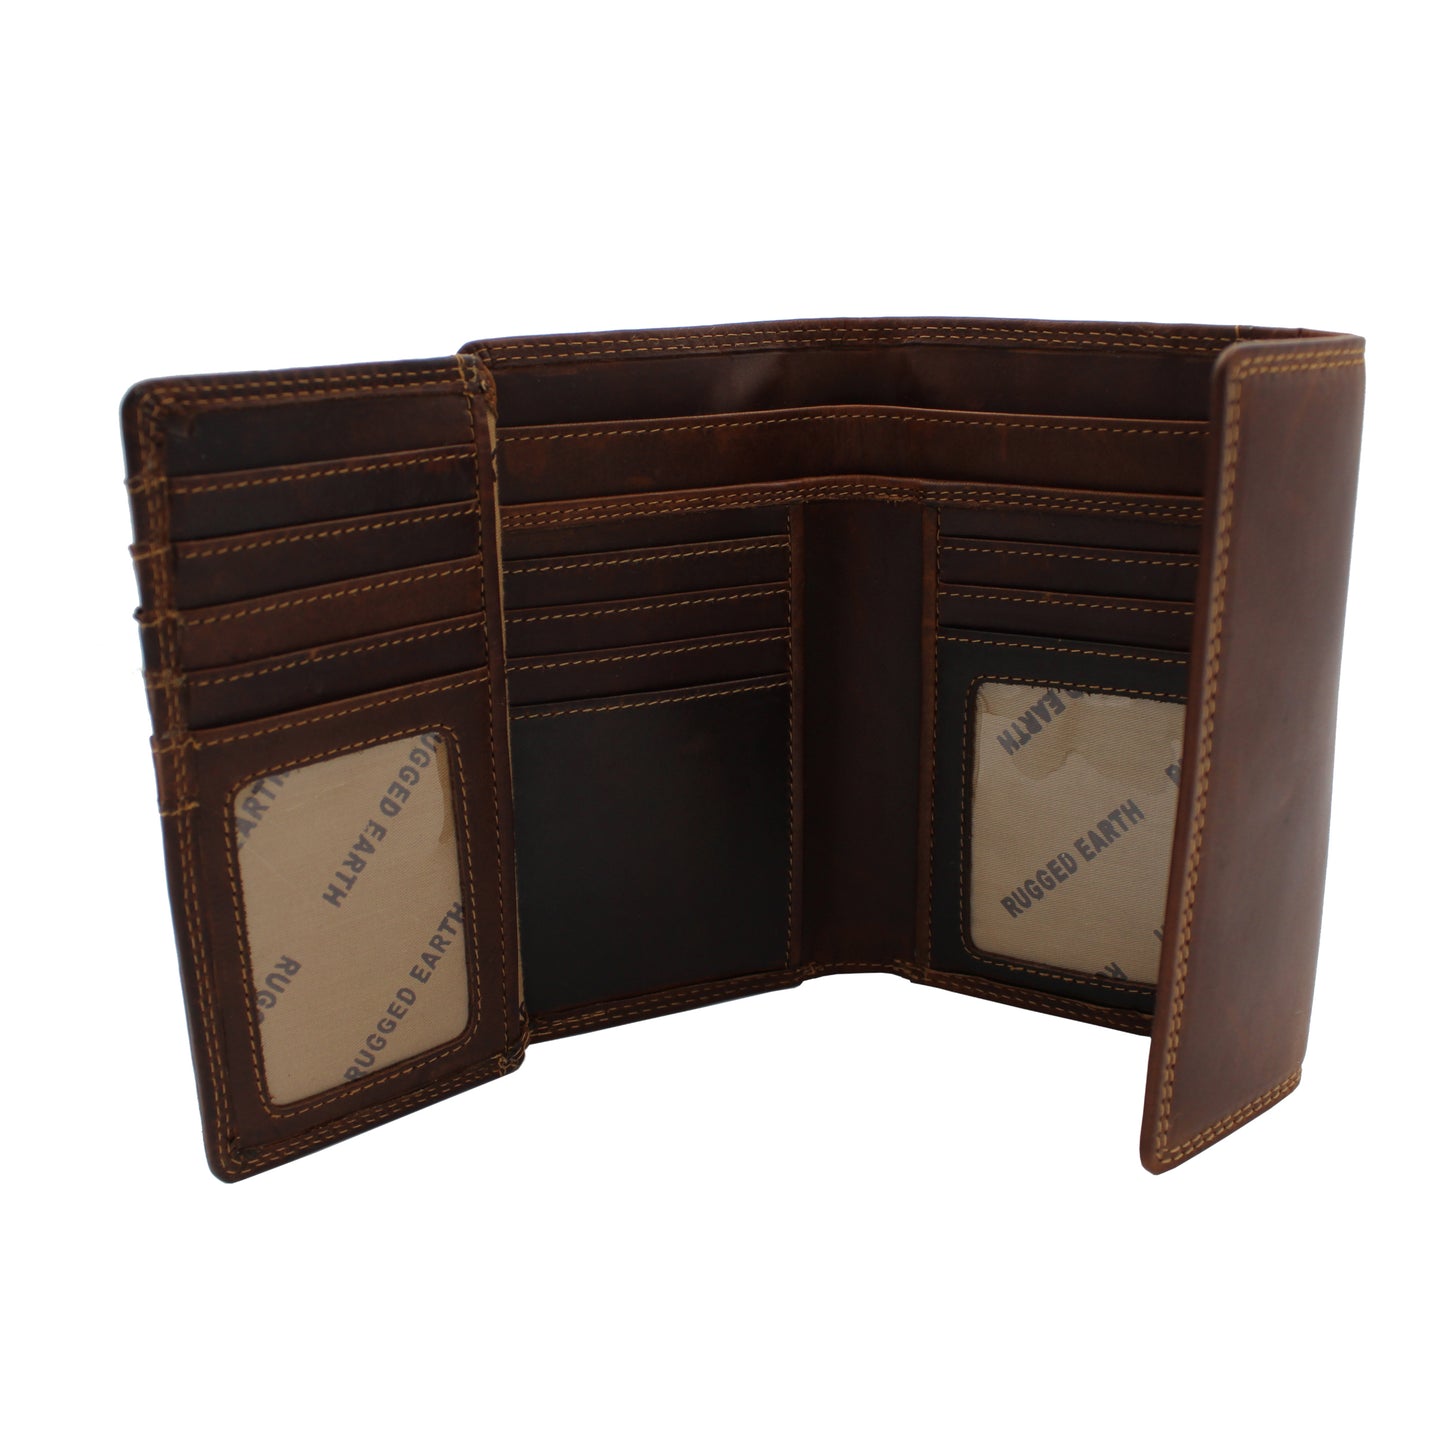 RE Leather Wallet - 4 Fold Wallet